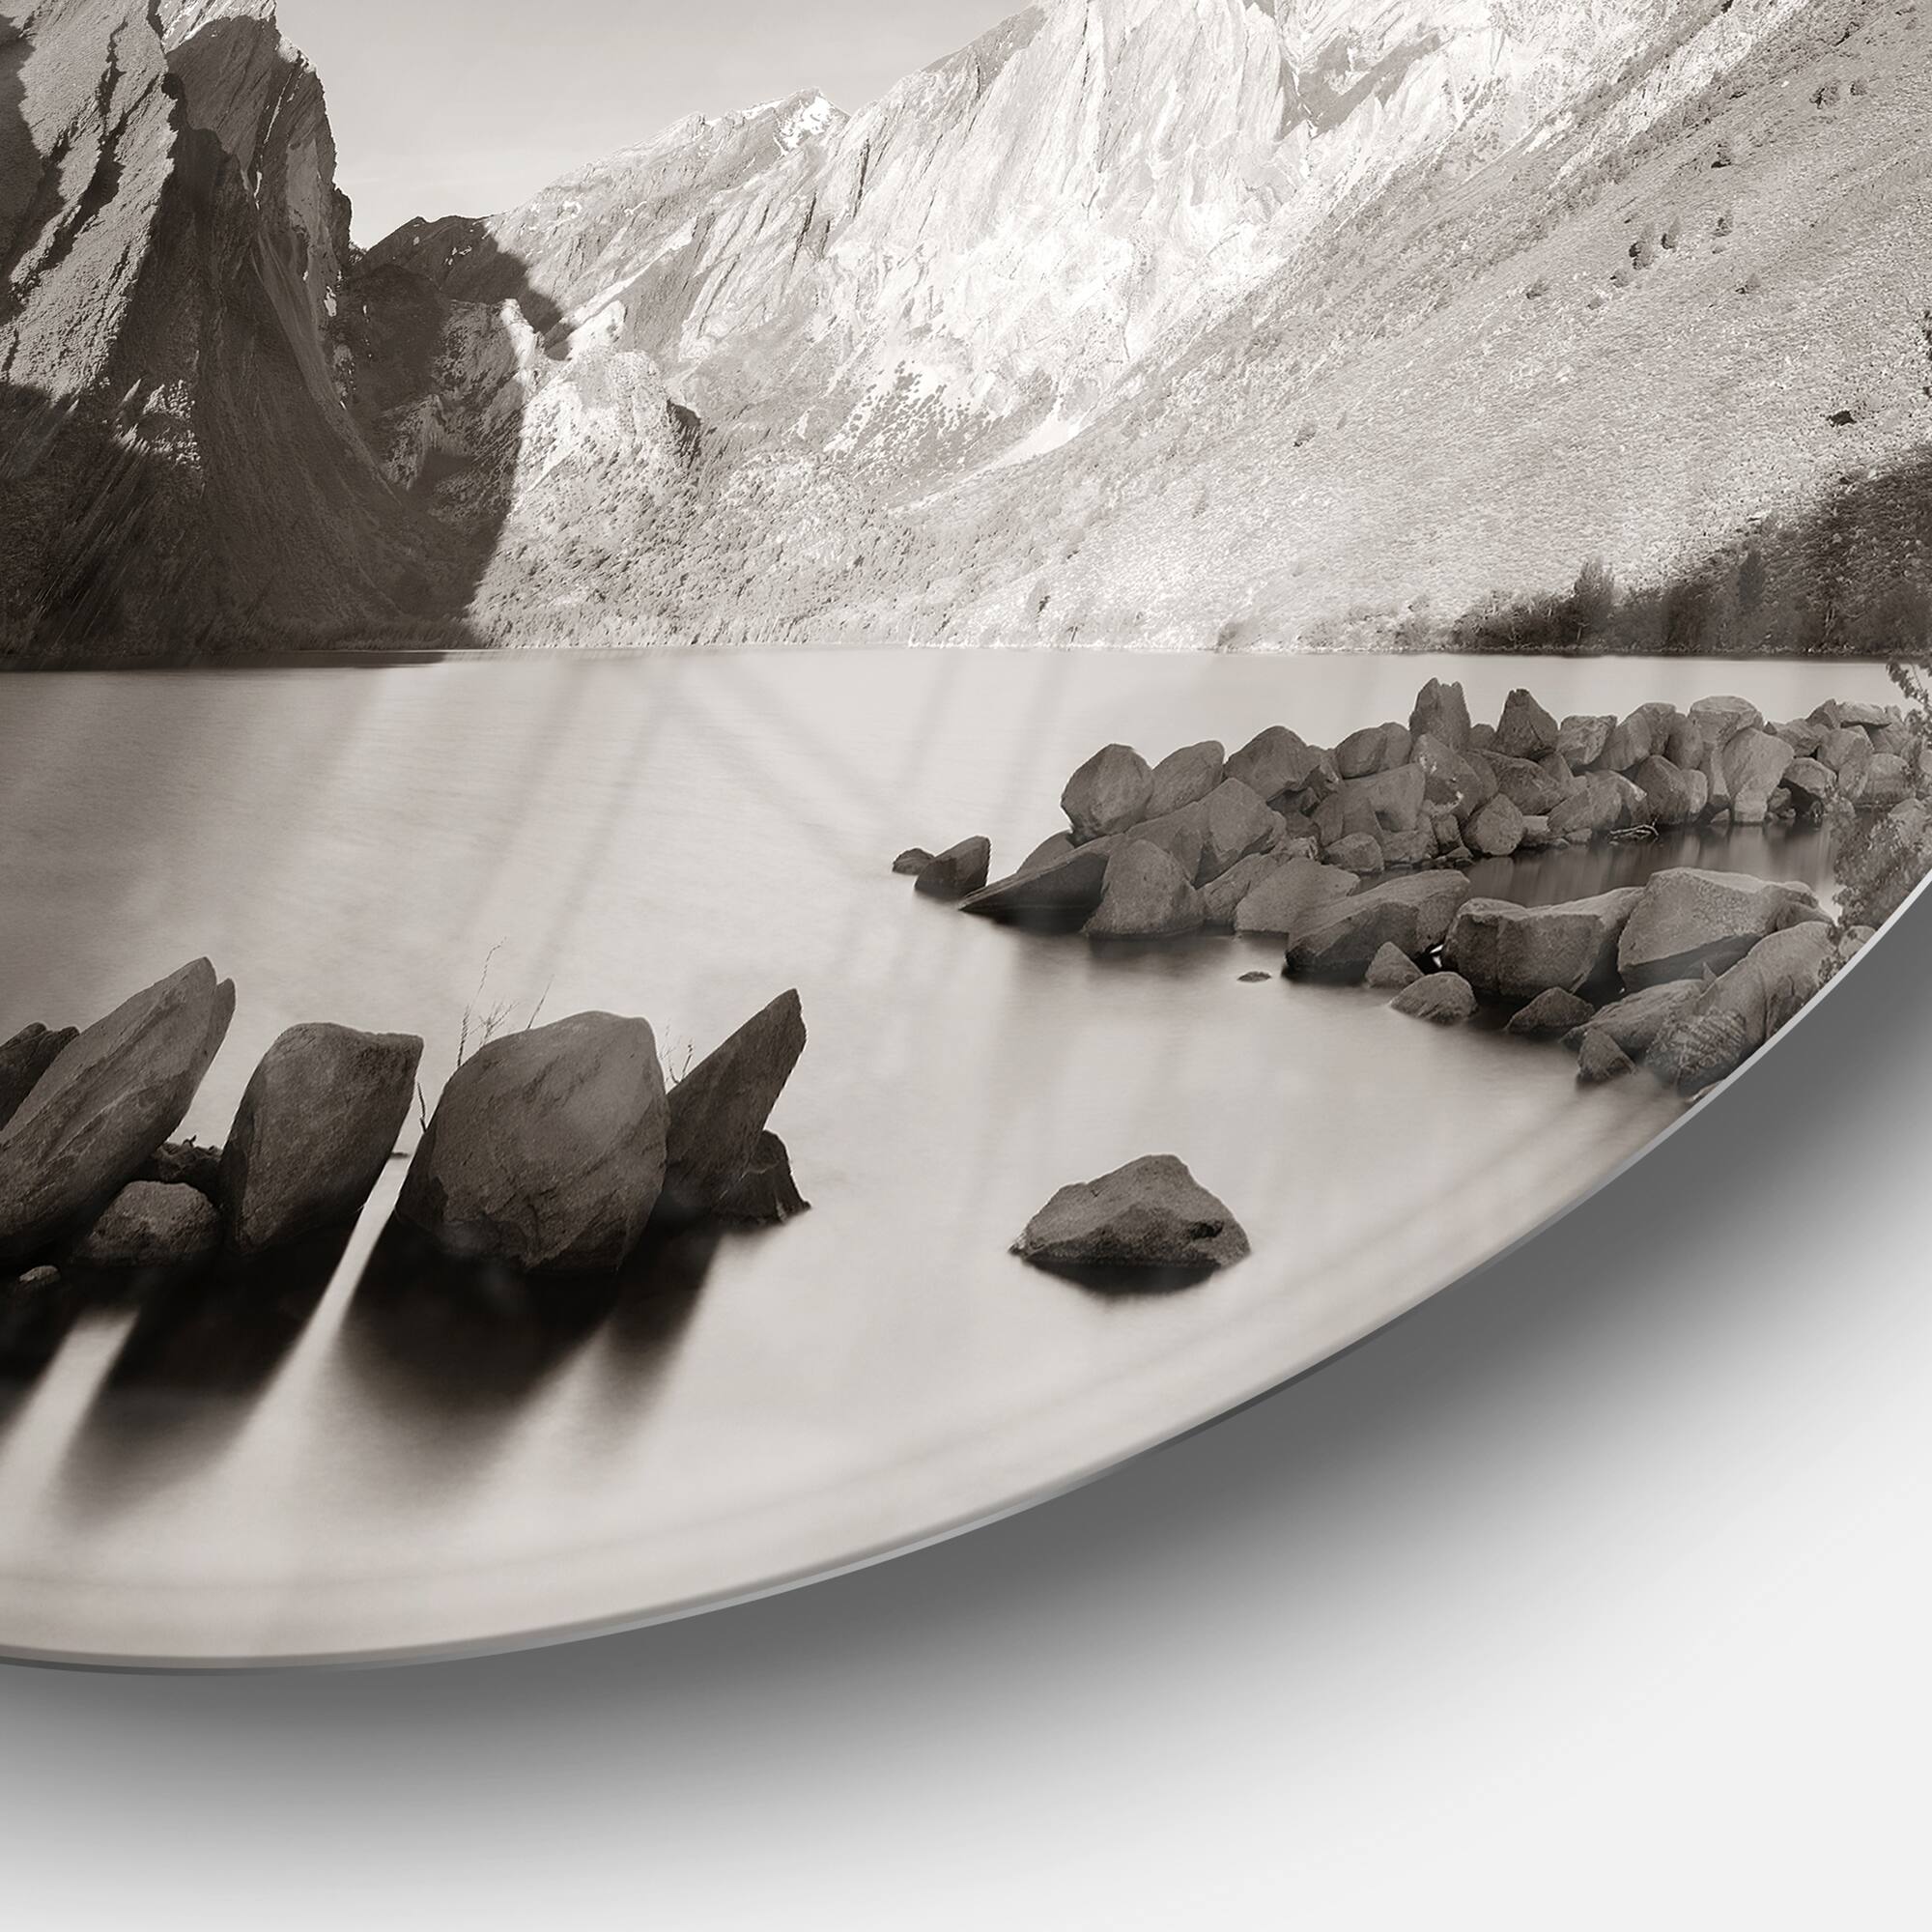 Designart - Snow Mountain Lake Panorama&#x27; Disc Large Landscape Metal Circle Wall Art